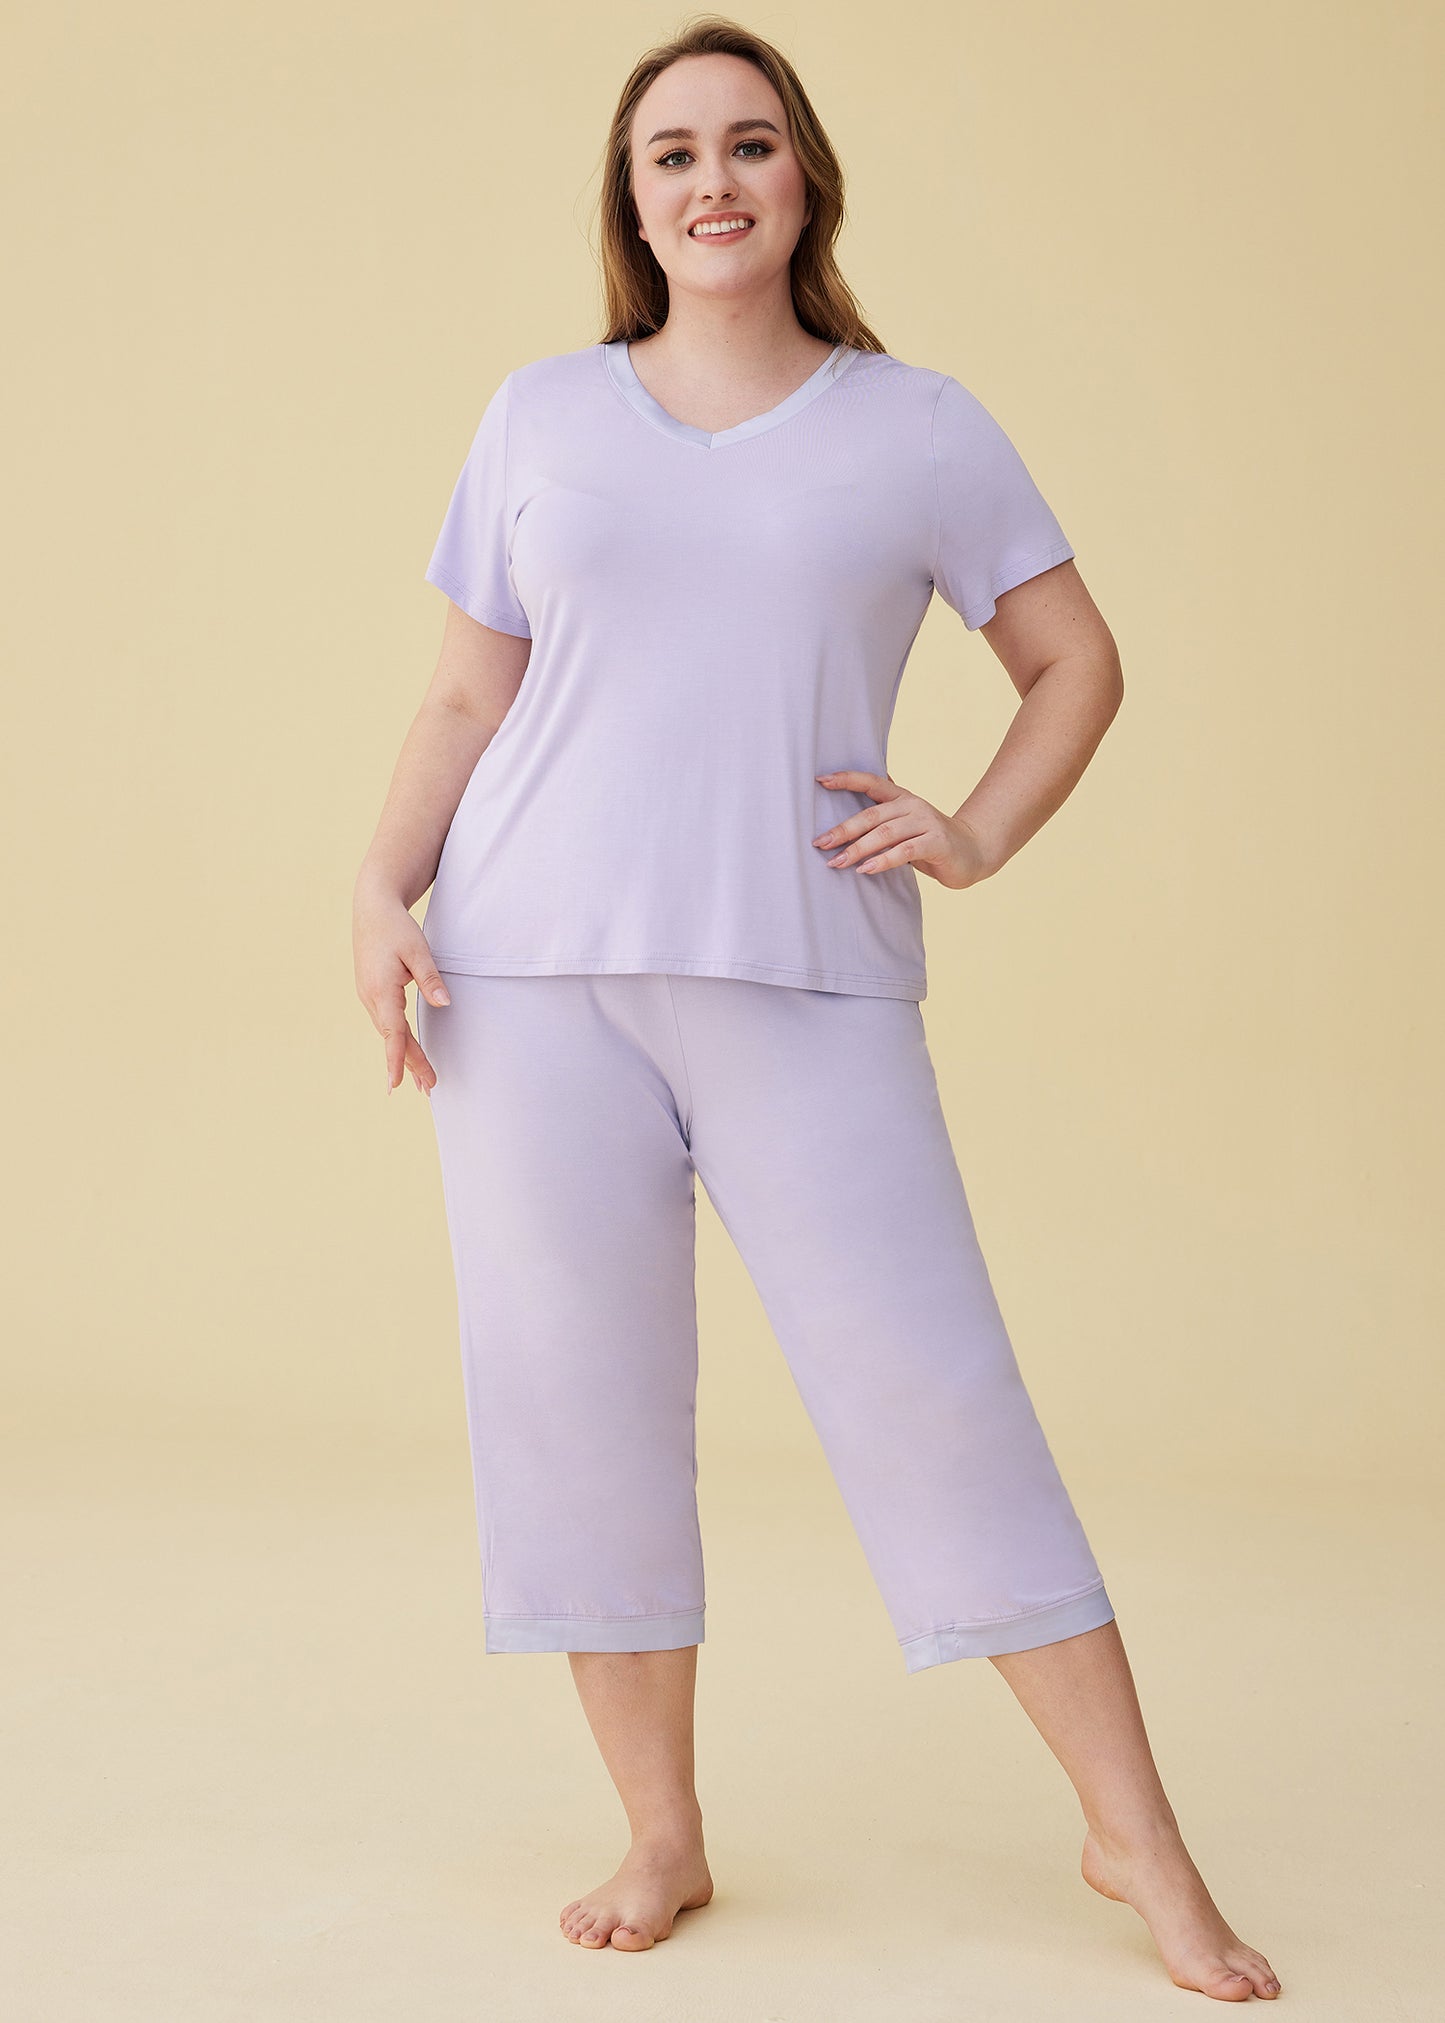 Women’s Bamboo Tops with Capri Pants Pajamas Set